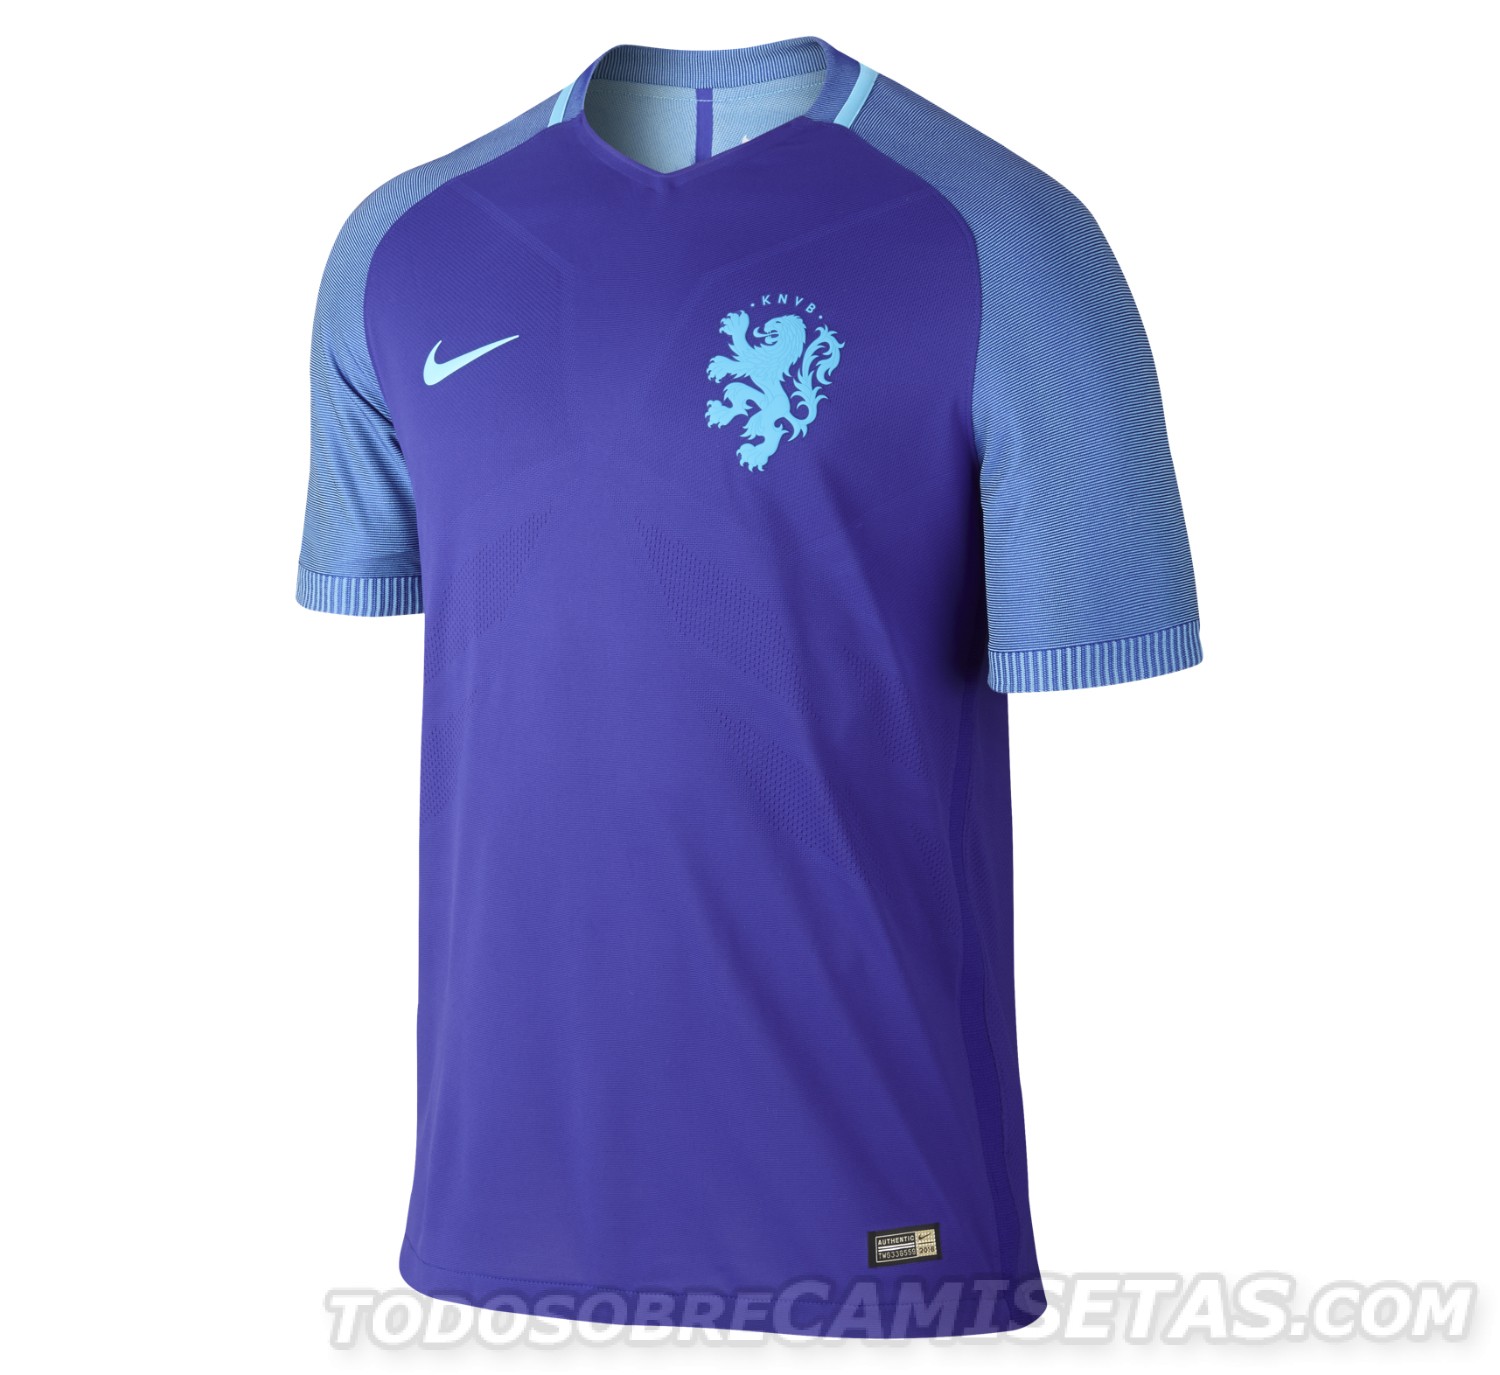 Netherlands Nike 2016 kits